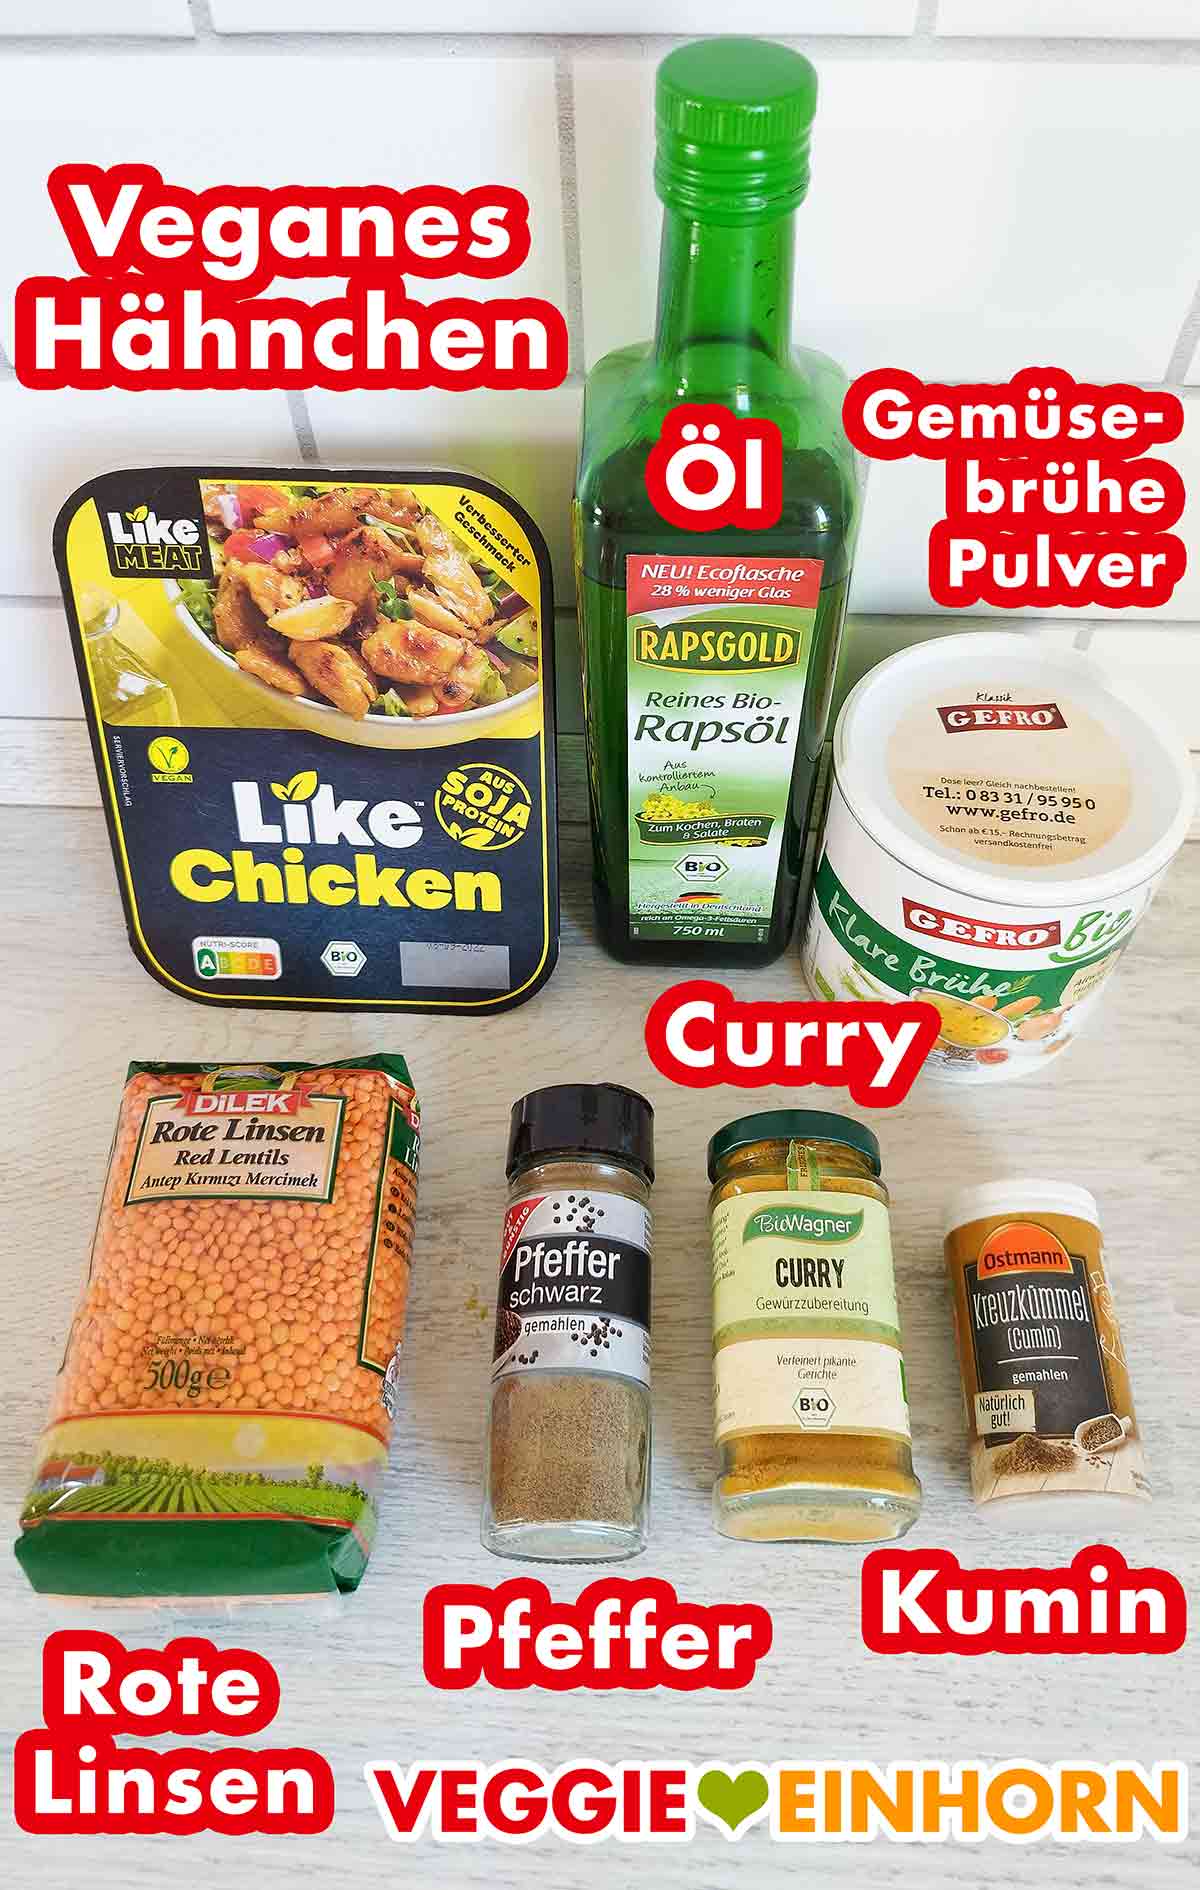 Veganes Hähnchenfleisch, Öl, Gemüsebrühe Pulver, rote Linsen, Pfeffer, Currypulver, Kreuzkümmel